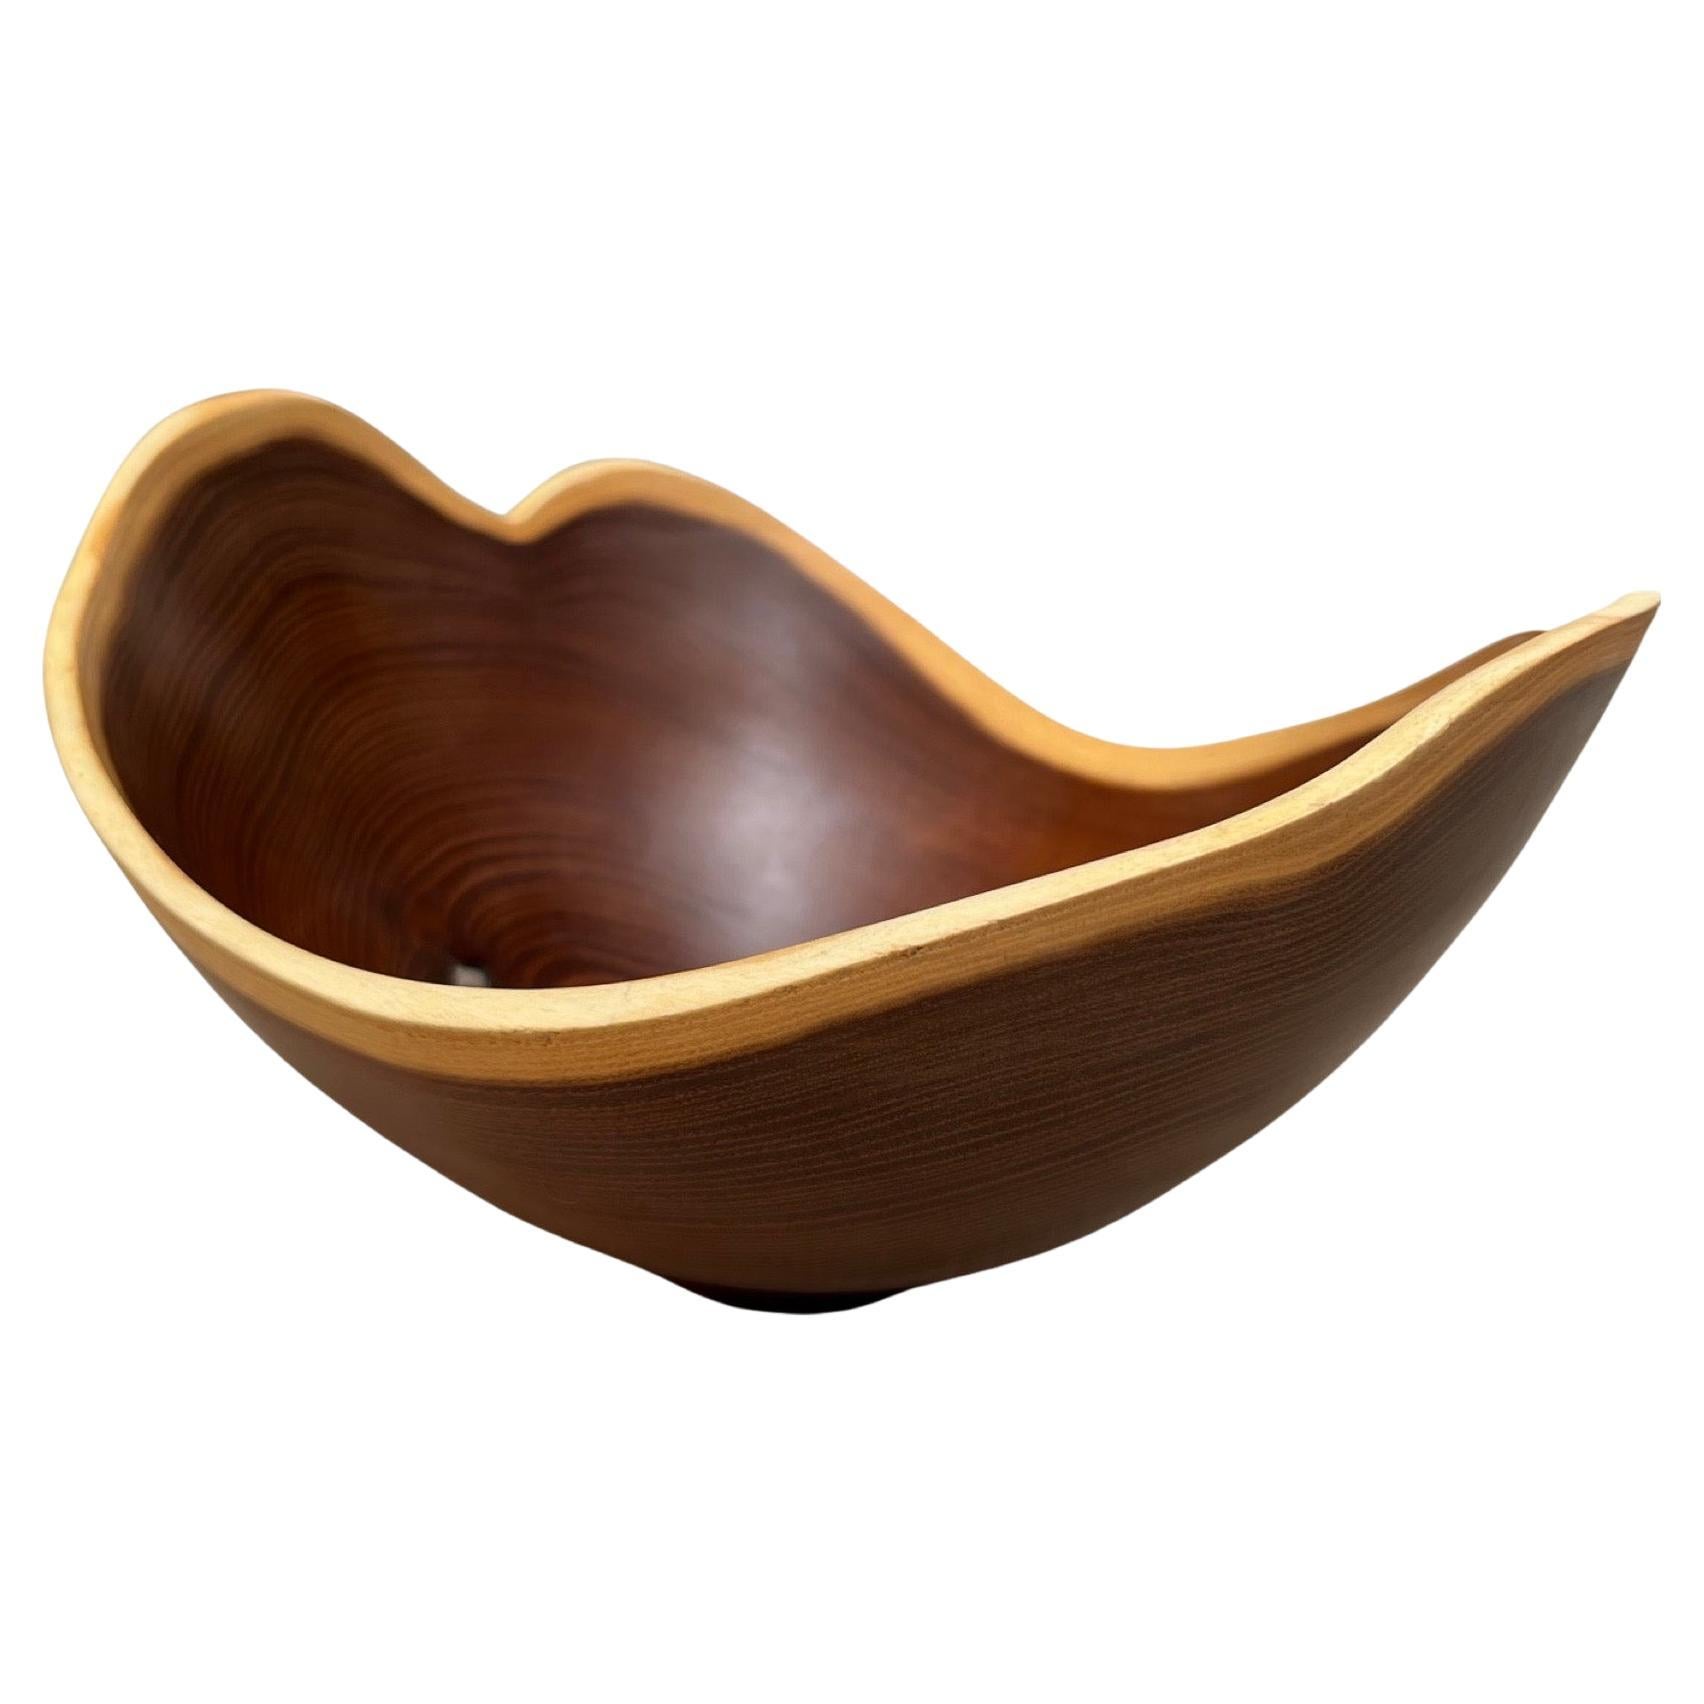 Organic Modern William Rubenstein Sculptural Osage Orange Wood Bowl